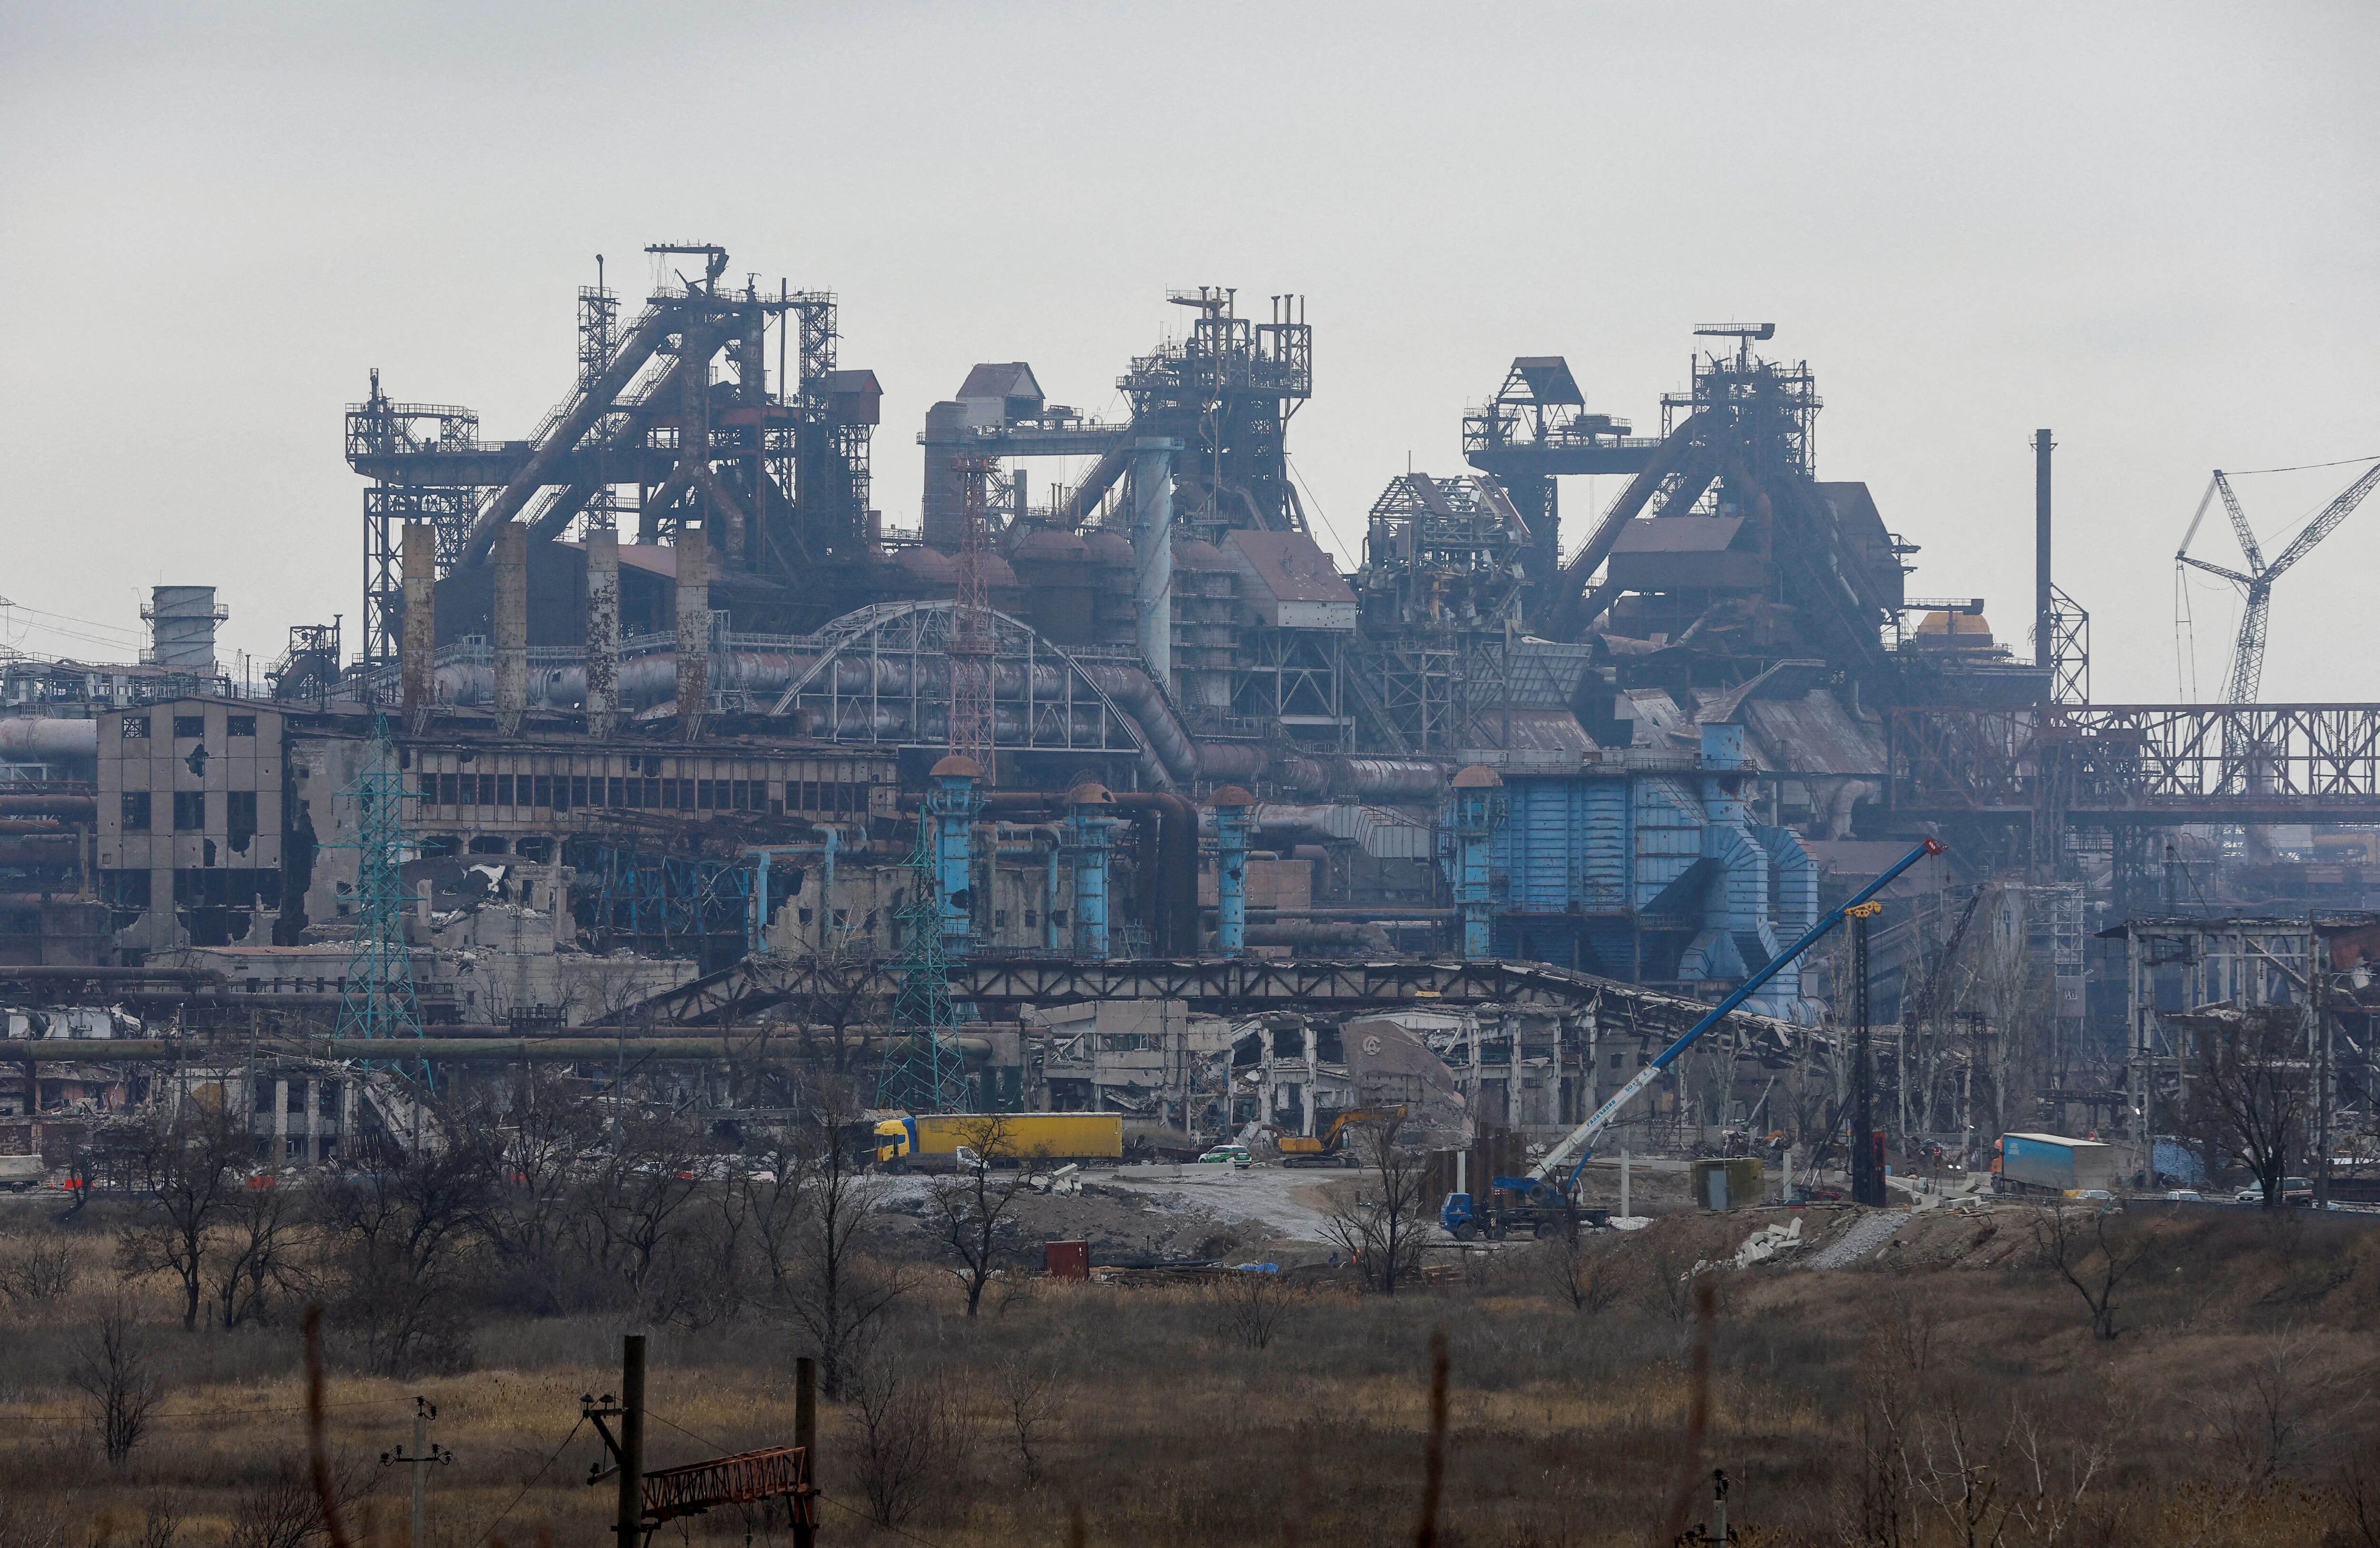 FOTO DE ARCHIVO: Una vista muestra la acería Azovstal destruida durante el conflicto entre Rusia y Ucrania en Mariupol, Ucrania controlada por Rusia, el 16 de marzo de 2023. REUTERS/Alexander Ermochenko/Foto de archivo